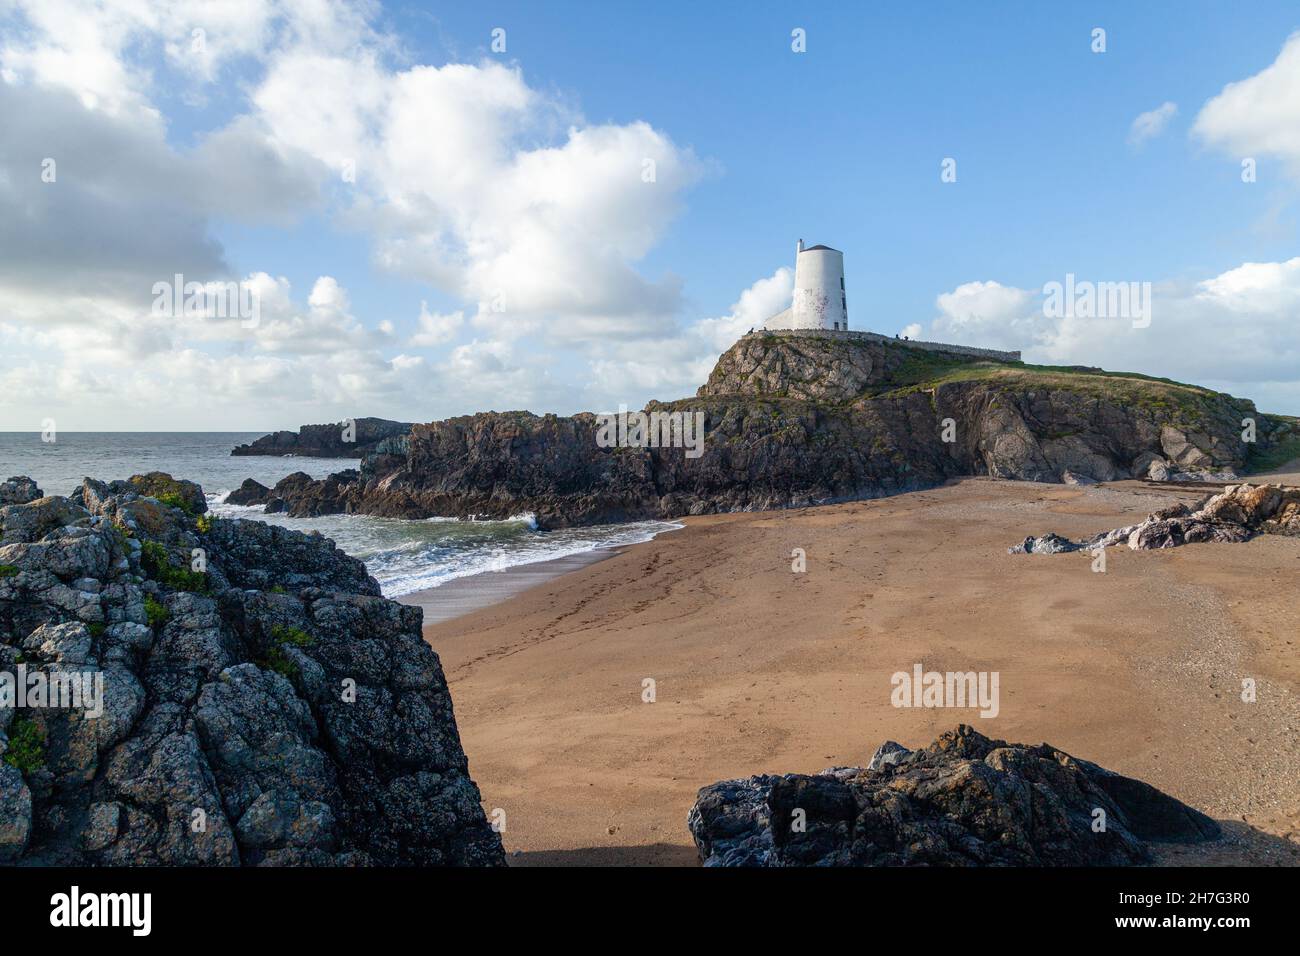 Twr Mawr lighthouse on Llanddwyn Island, Anglesey, North Wales Stock Photo